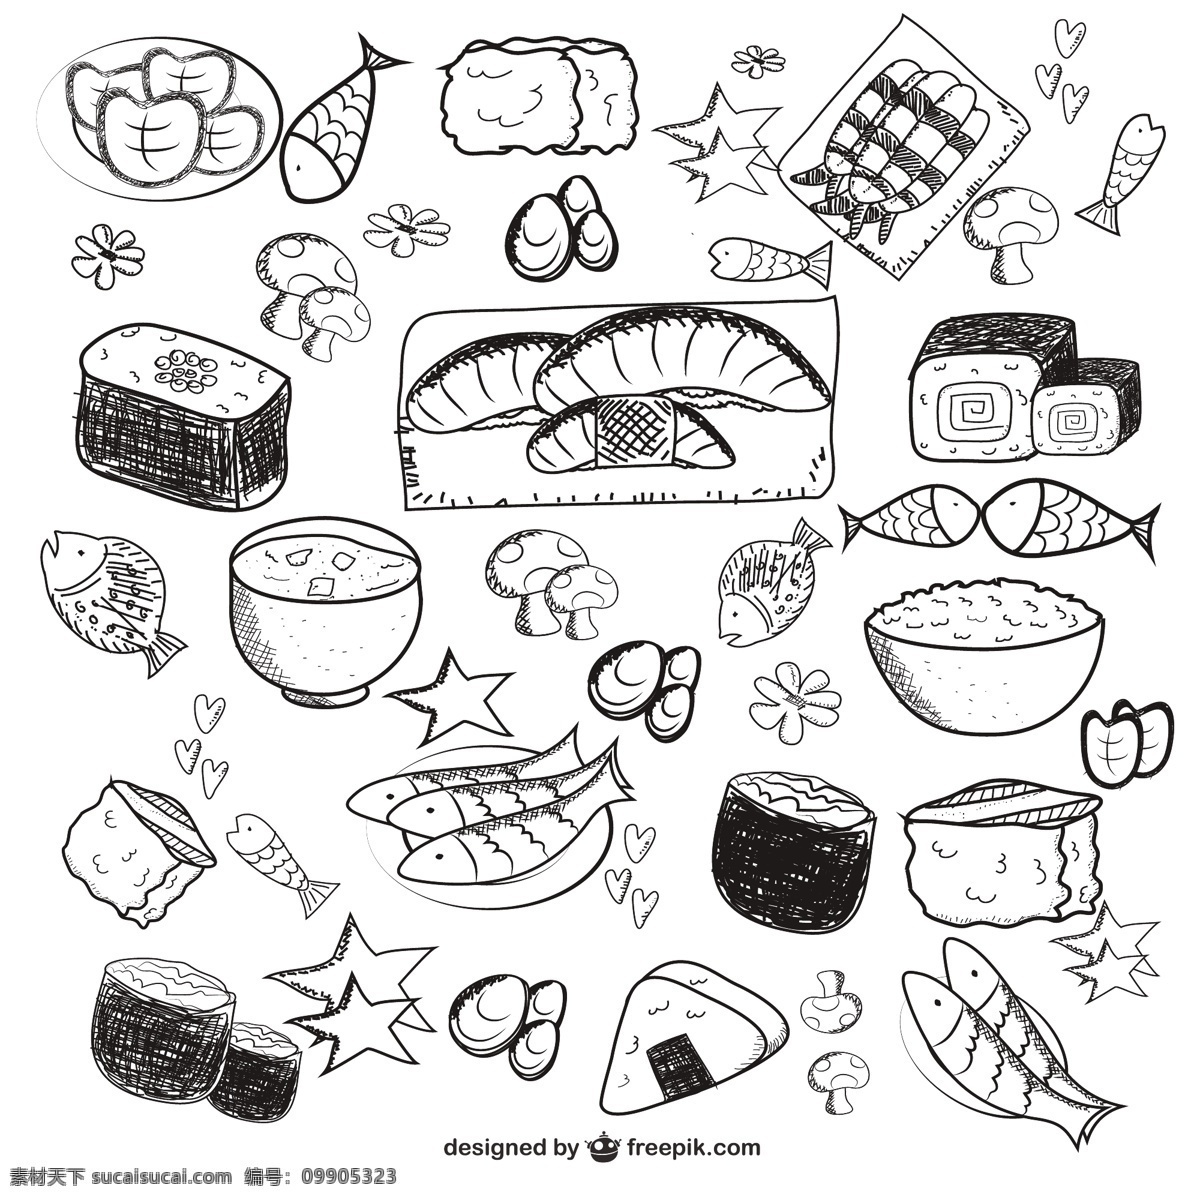 勾勒亚洲食品 食品 图标 手 鱼 手绘 蔬菜 可爱 涂鸦 市场 绘图 水稻 食品的图标 说明符号 蘑菇 手的图标 白色